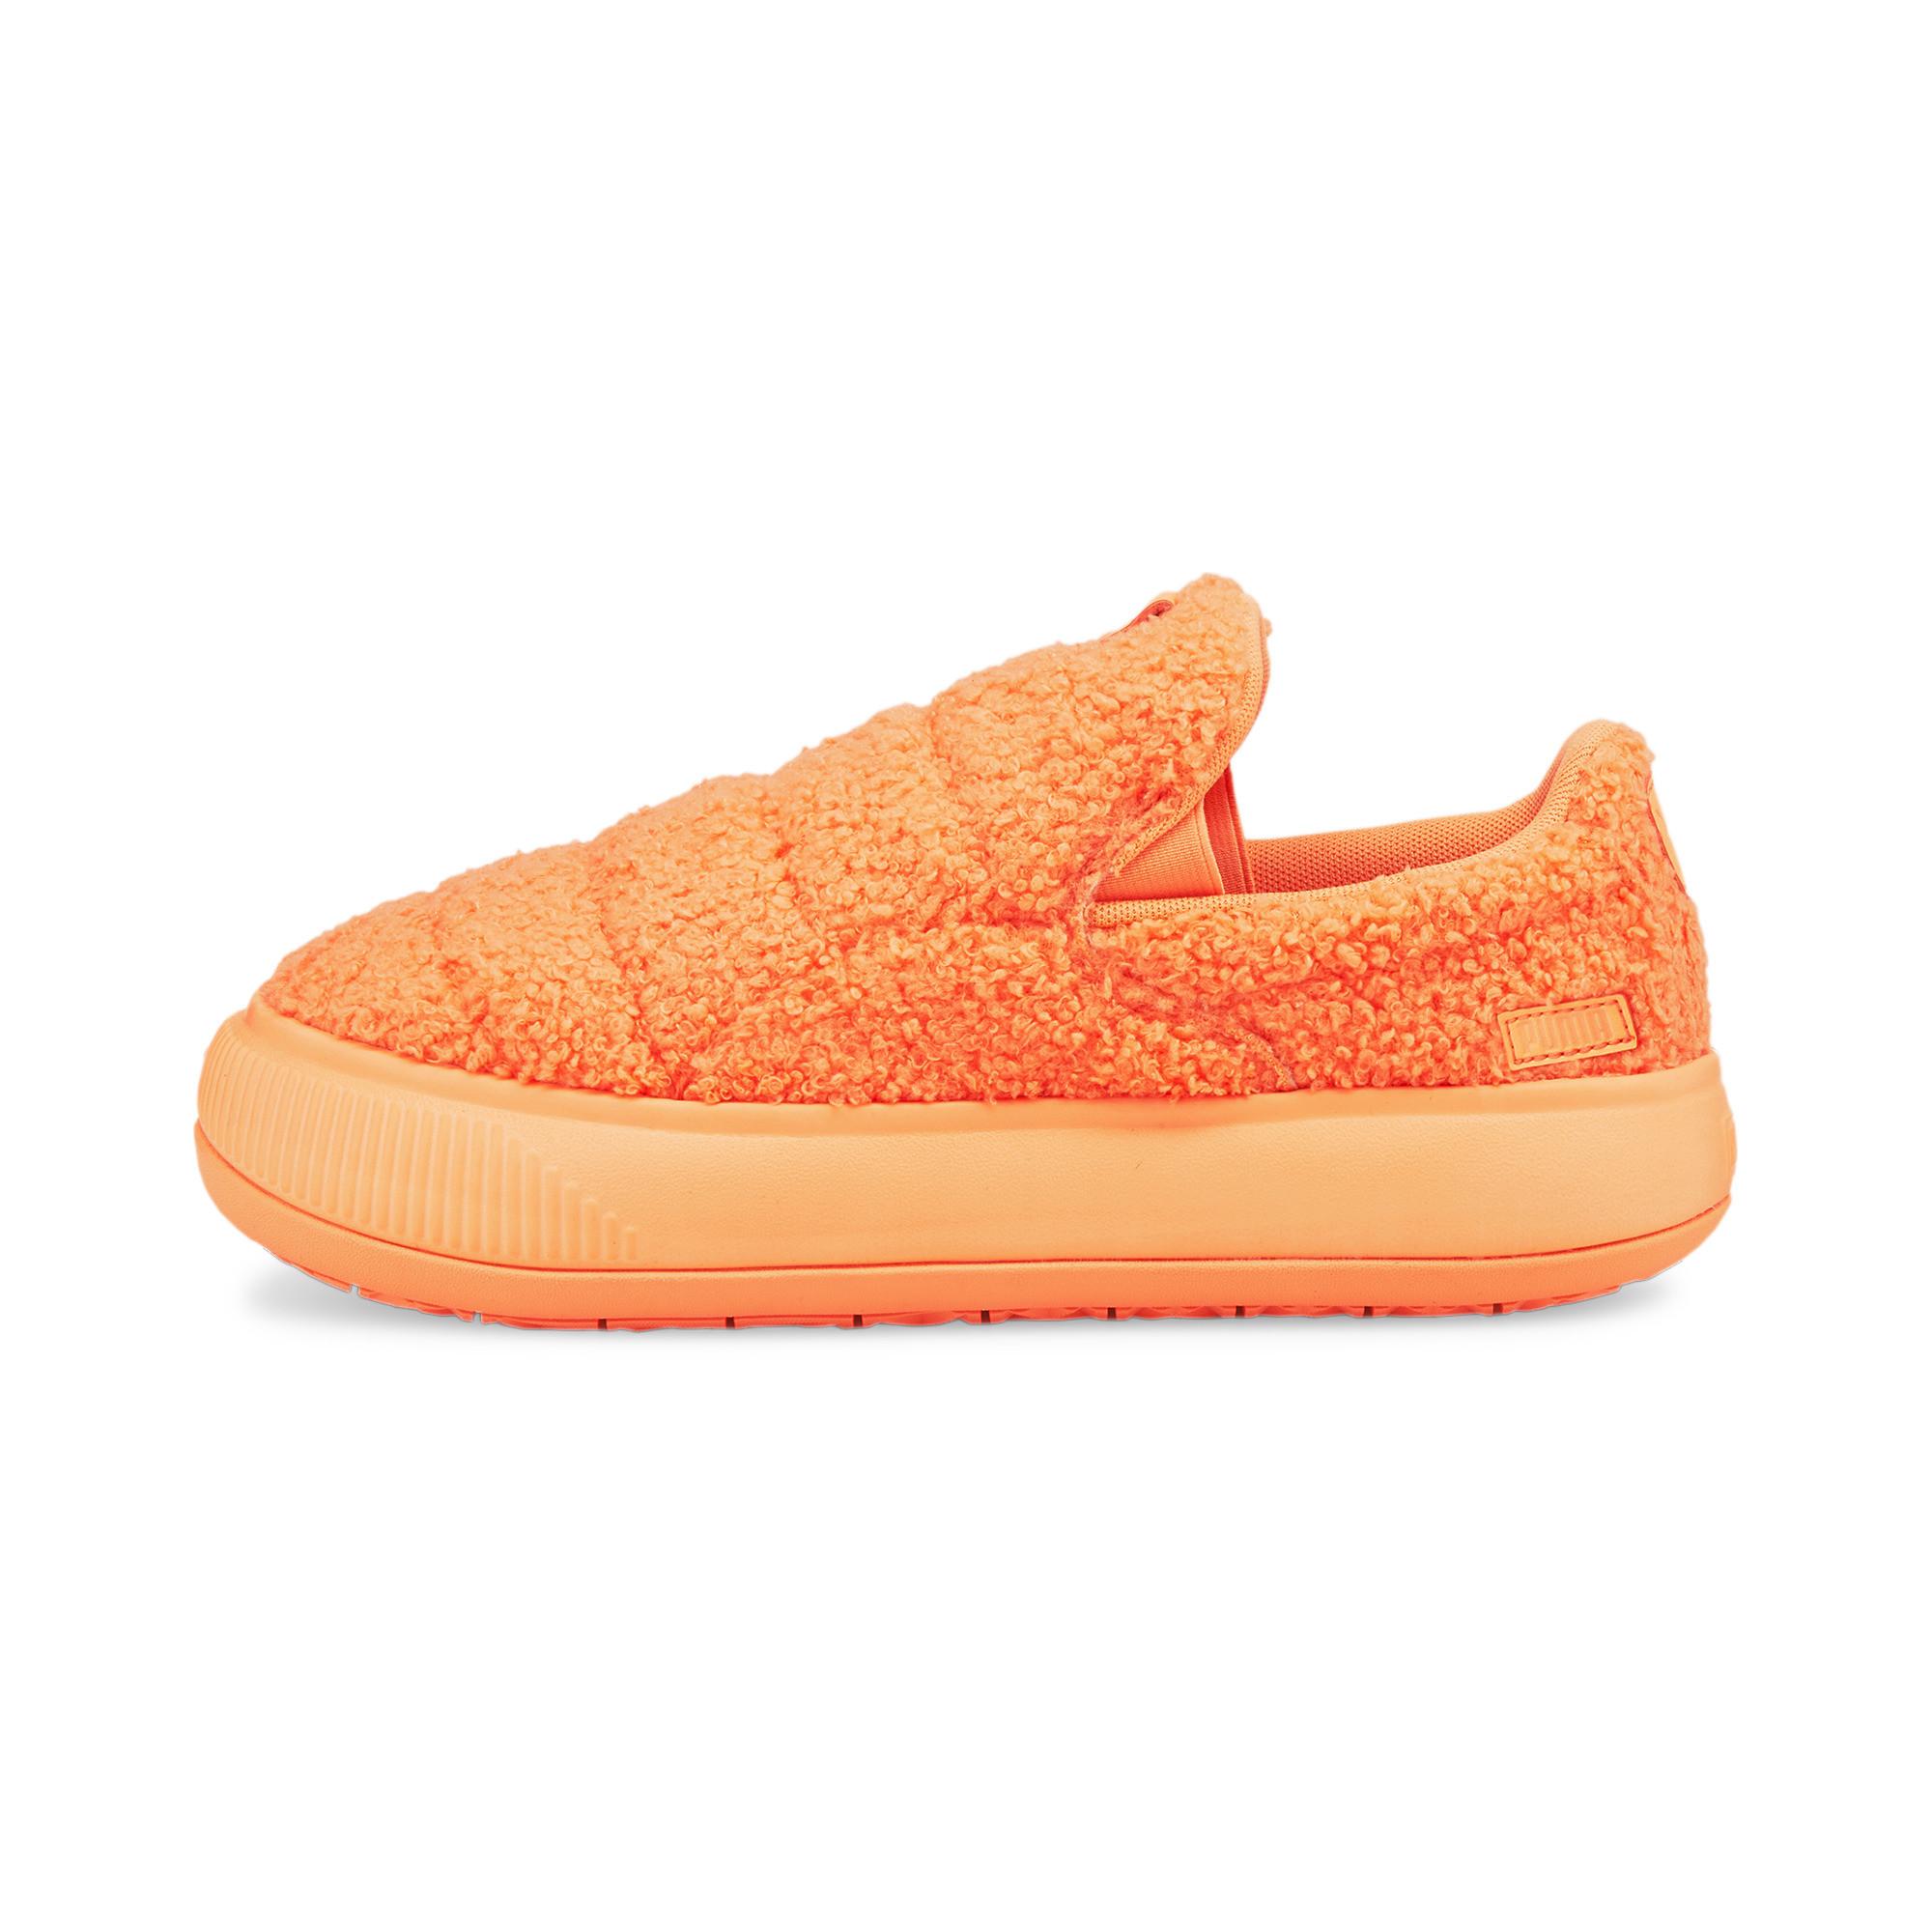 PUMA Suede Mayu Slip-on Teddy Shoes in Orange | Lyst